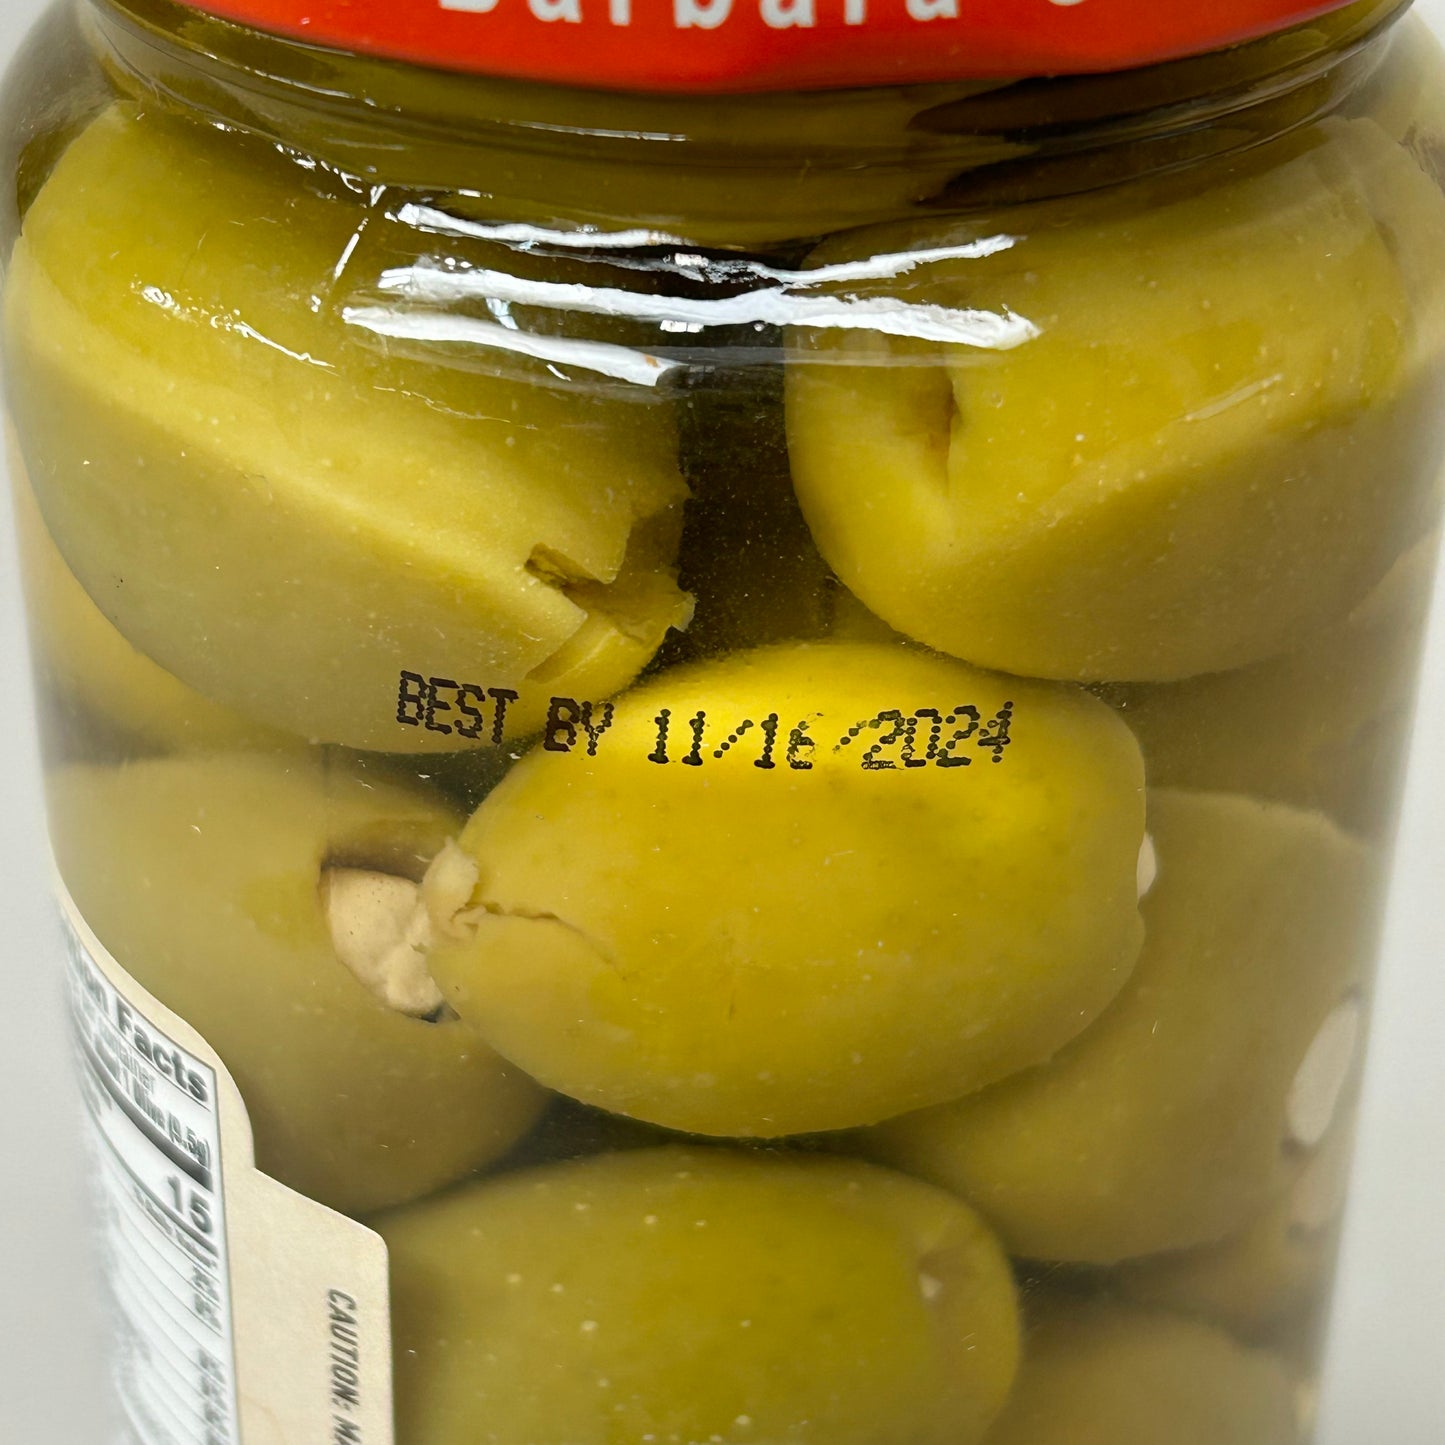 SANTA BARBARA OLIVE CO. 6-PACK! Blue Cheese Stuffed Olives 10 oz Jars BB 11/24 (New)